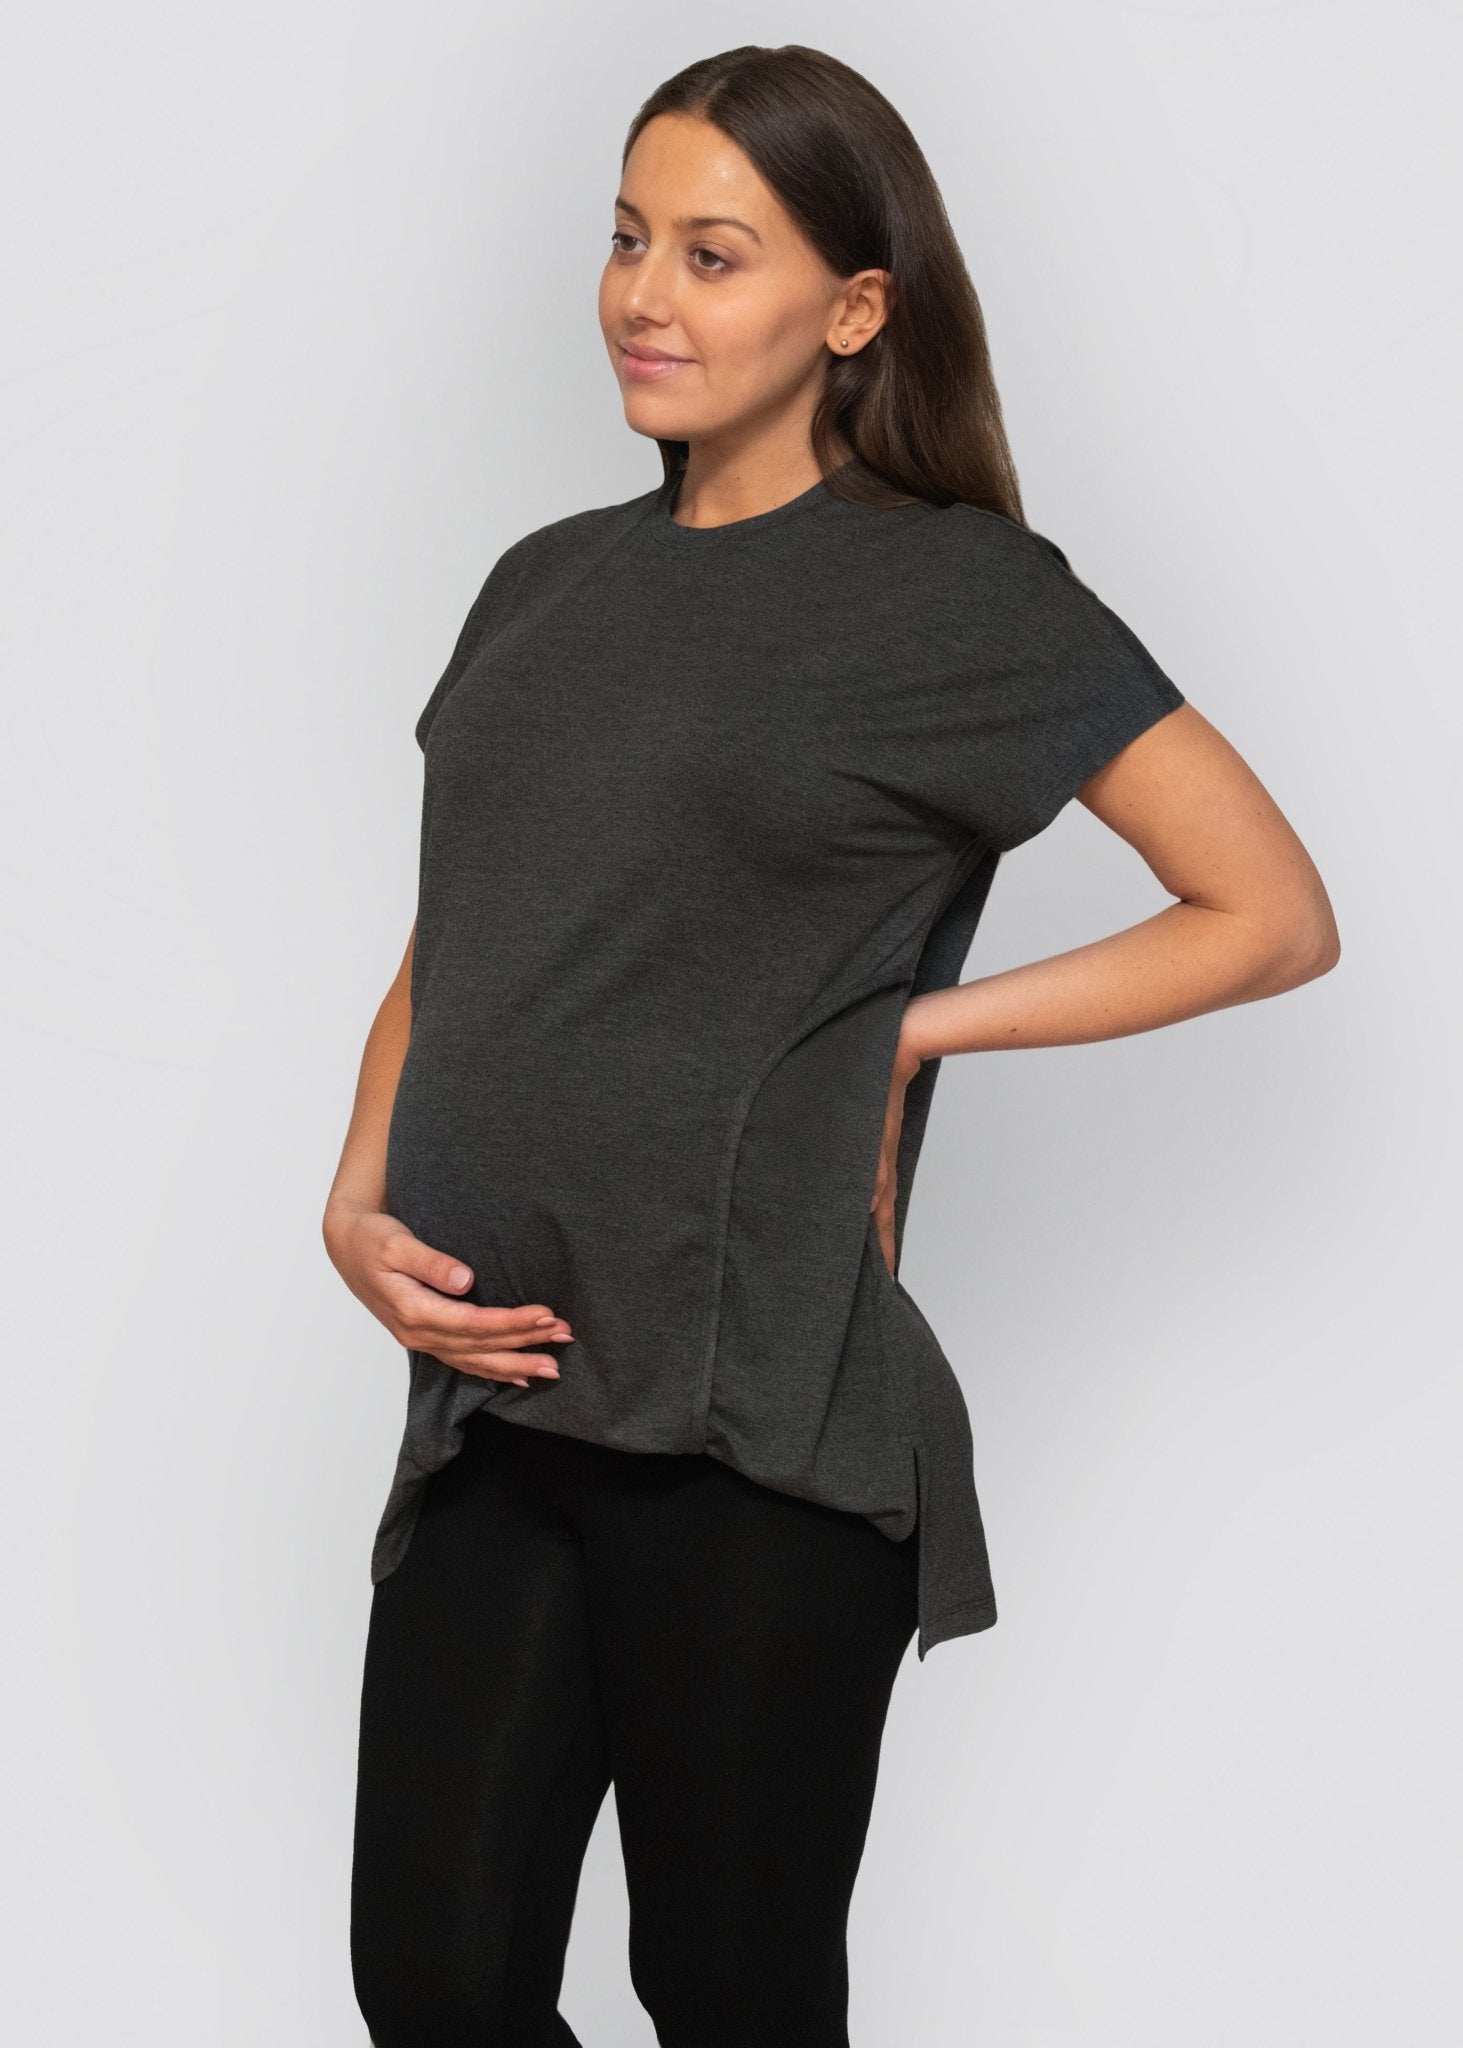 leggings - black-Úton Maternity-stride